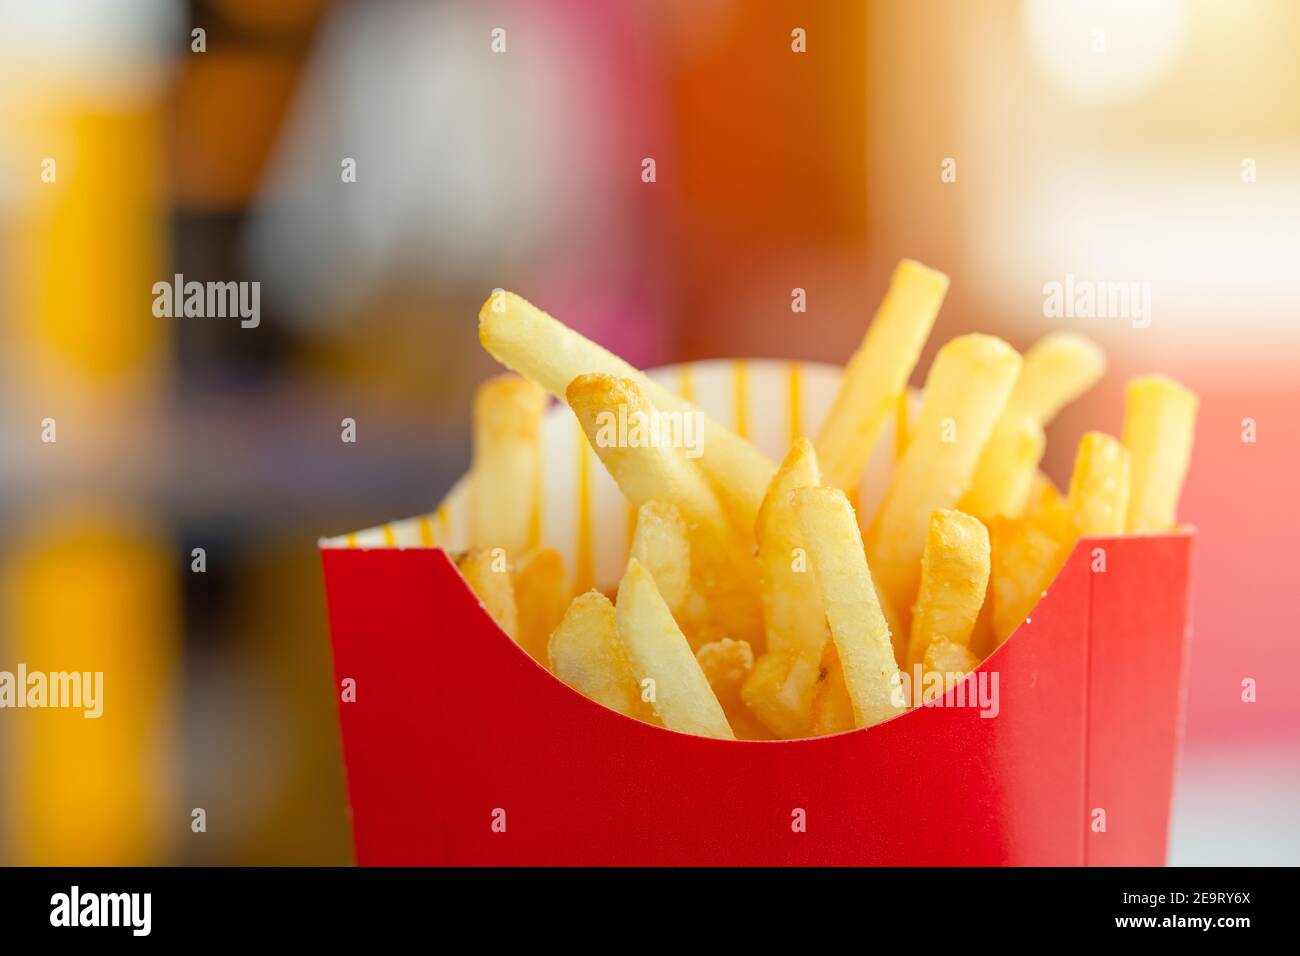 Kartoffelstiel braten oder Pommes frites hohe Kalorien Kohlenhydrate Fett Und Salz ungesunde amerikanische Stil beliebte Fast Food Stockfoto